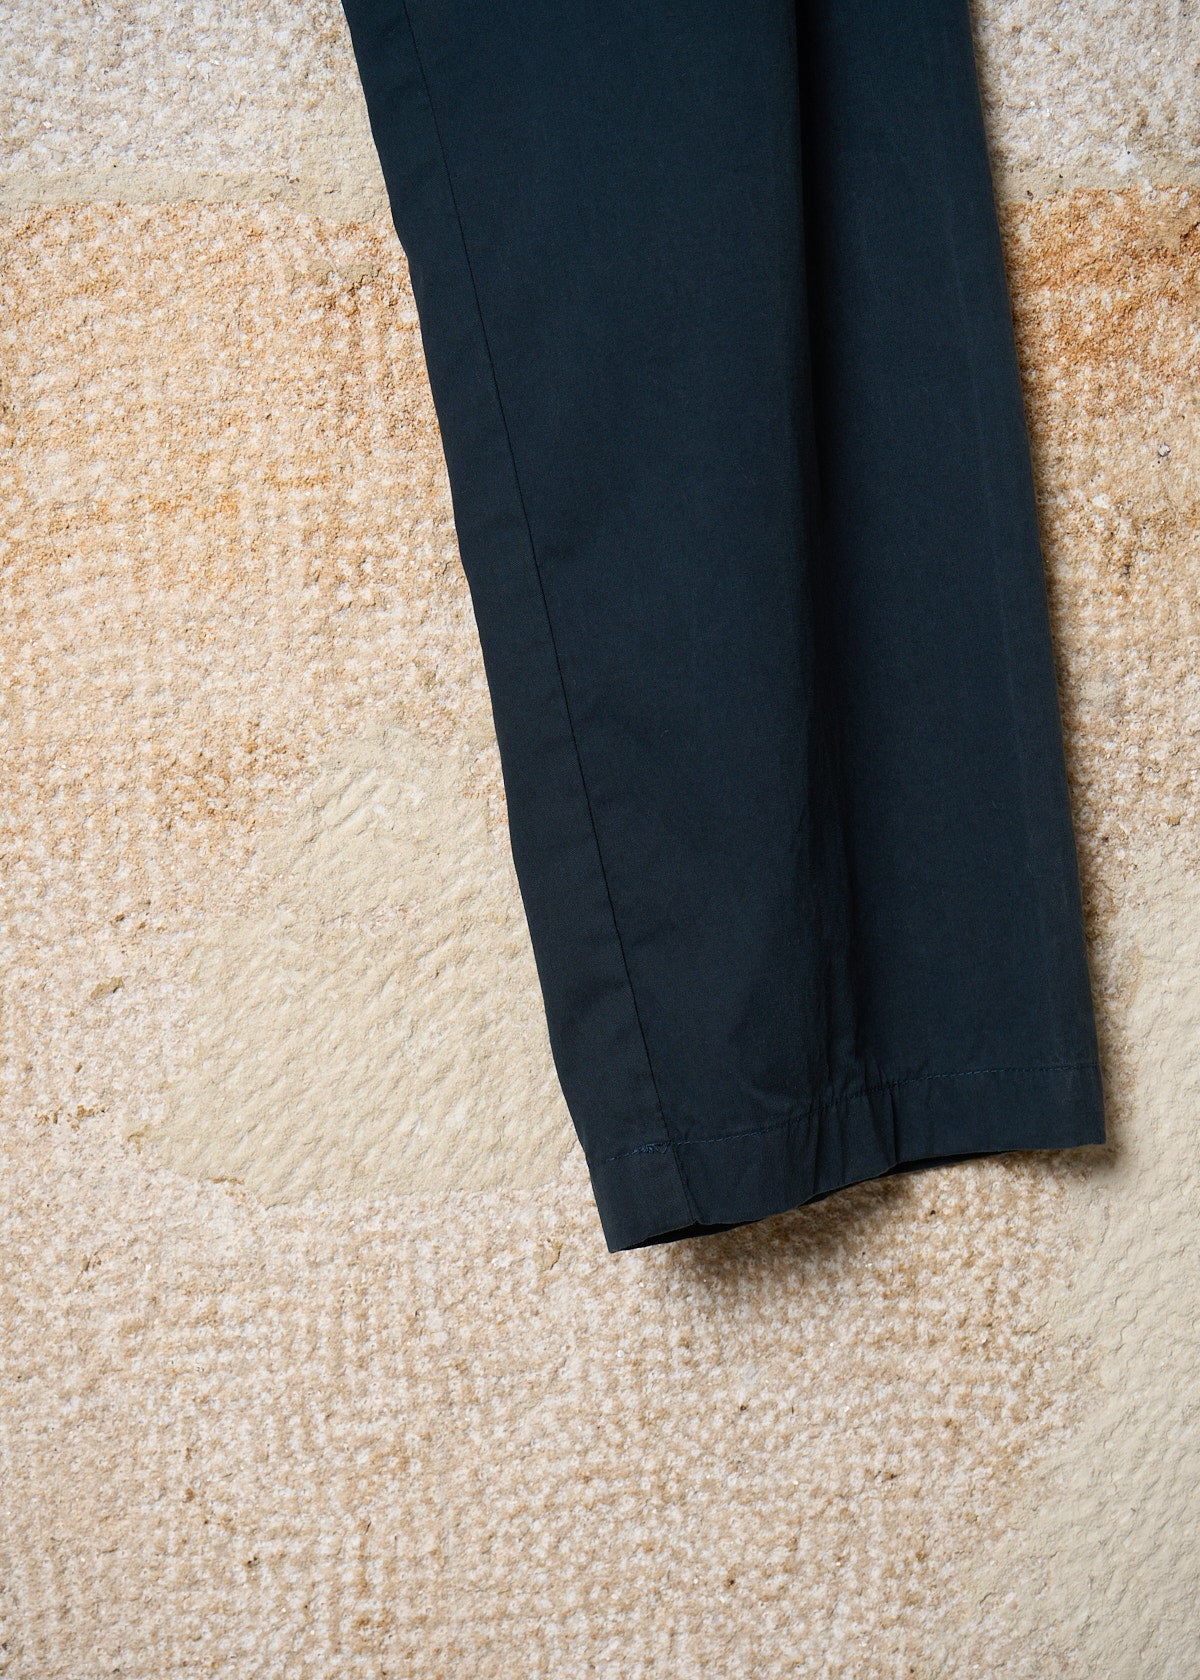 Martin Margiela Navy MCQueen Light Cotton Pants SS2001 - 48IT